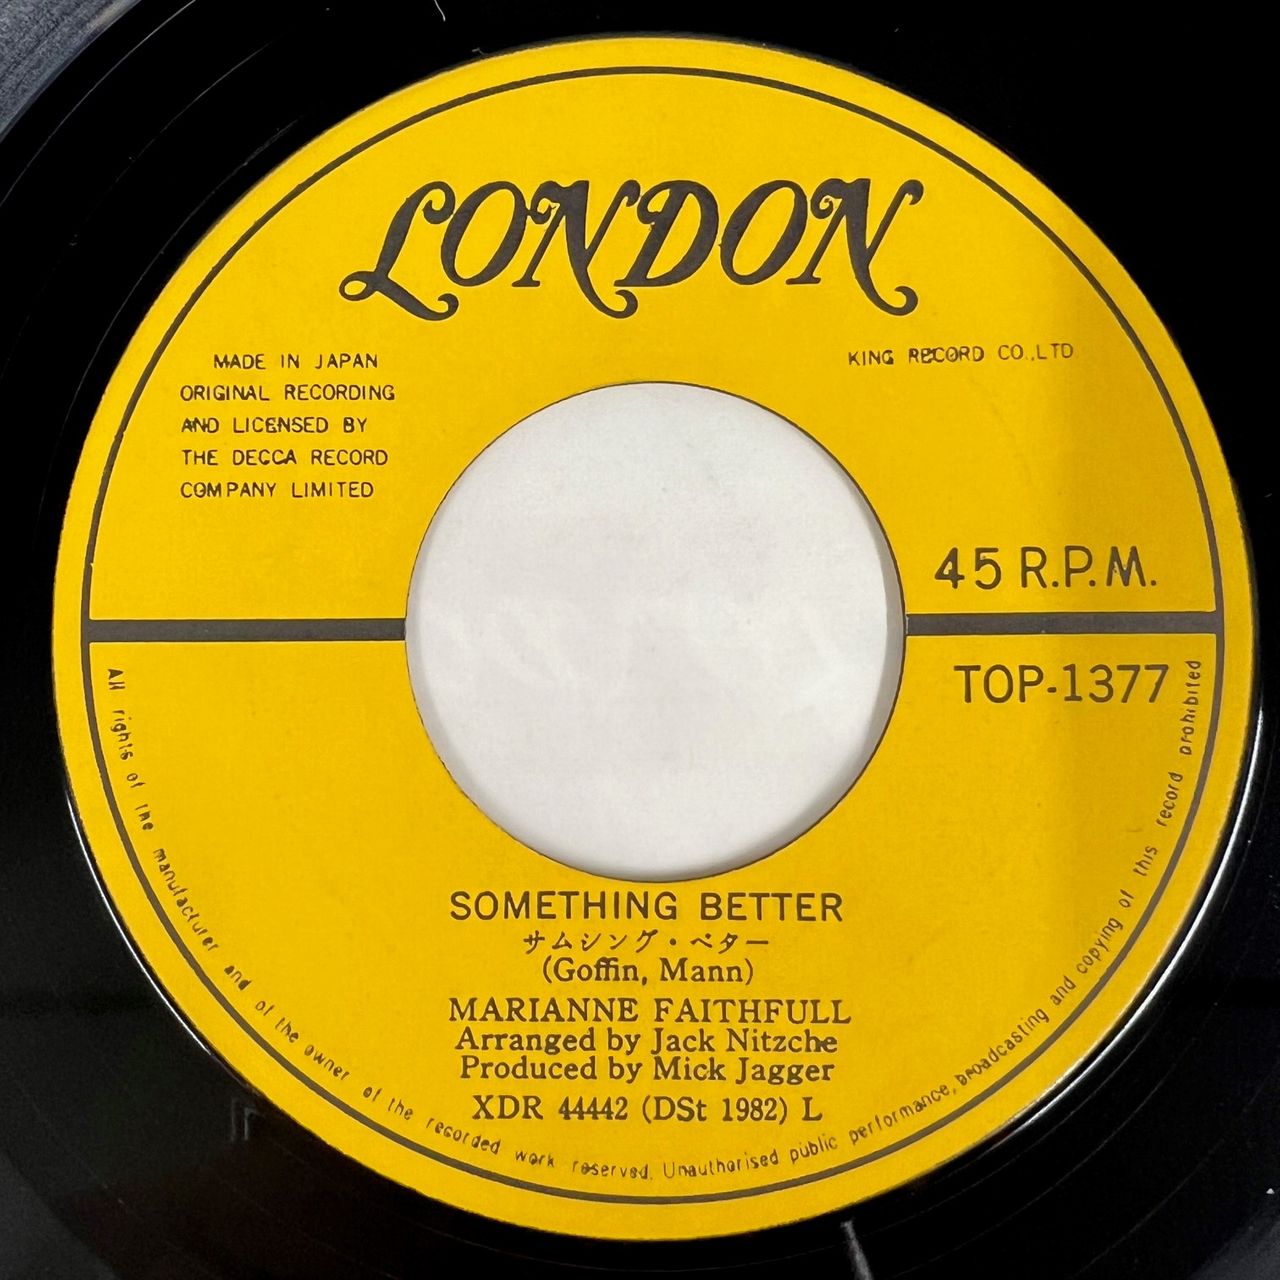 Marianne Faithfull Sister Morphine Japanese 7" vinyl single (7 inch record / 45) TOP-1377